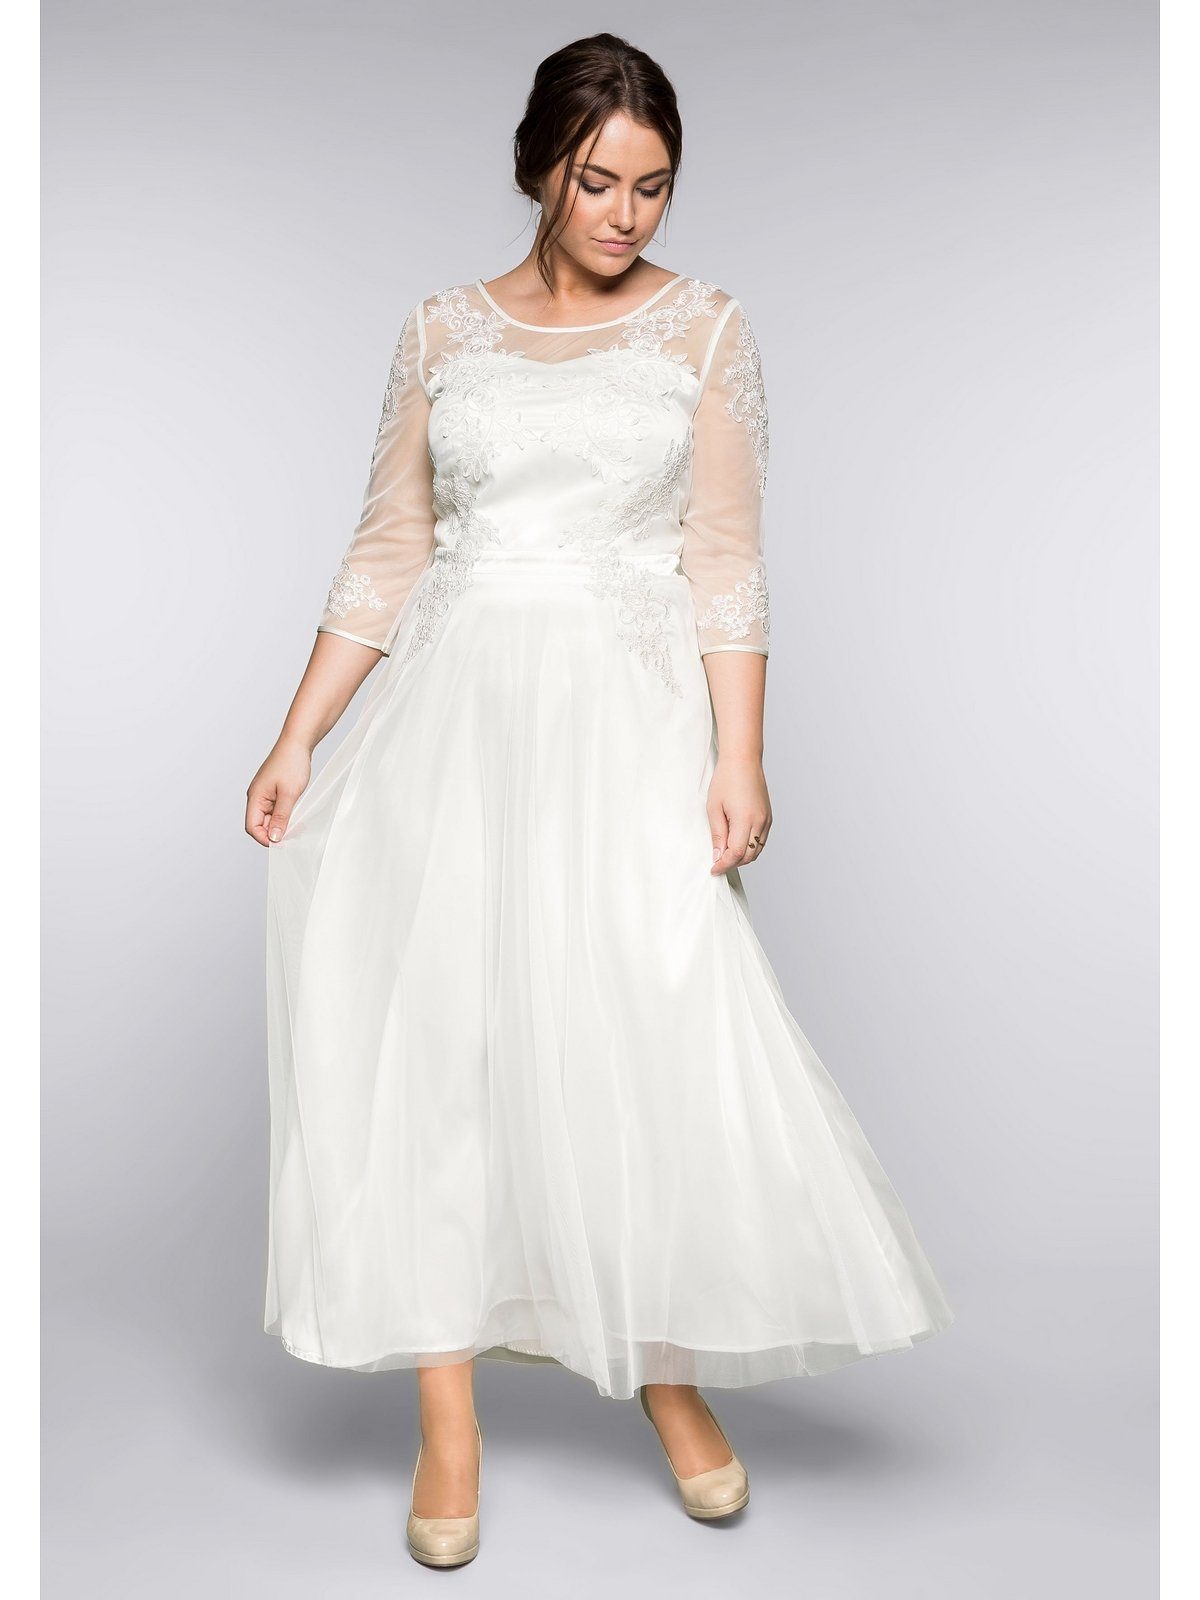 Hochzeitkleid online kaufen | OTTO